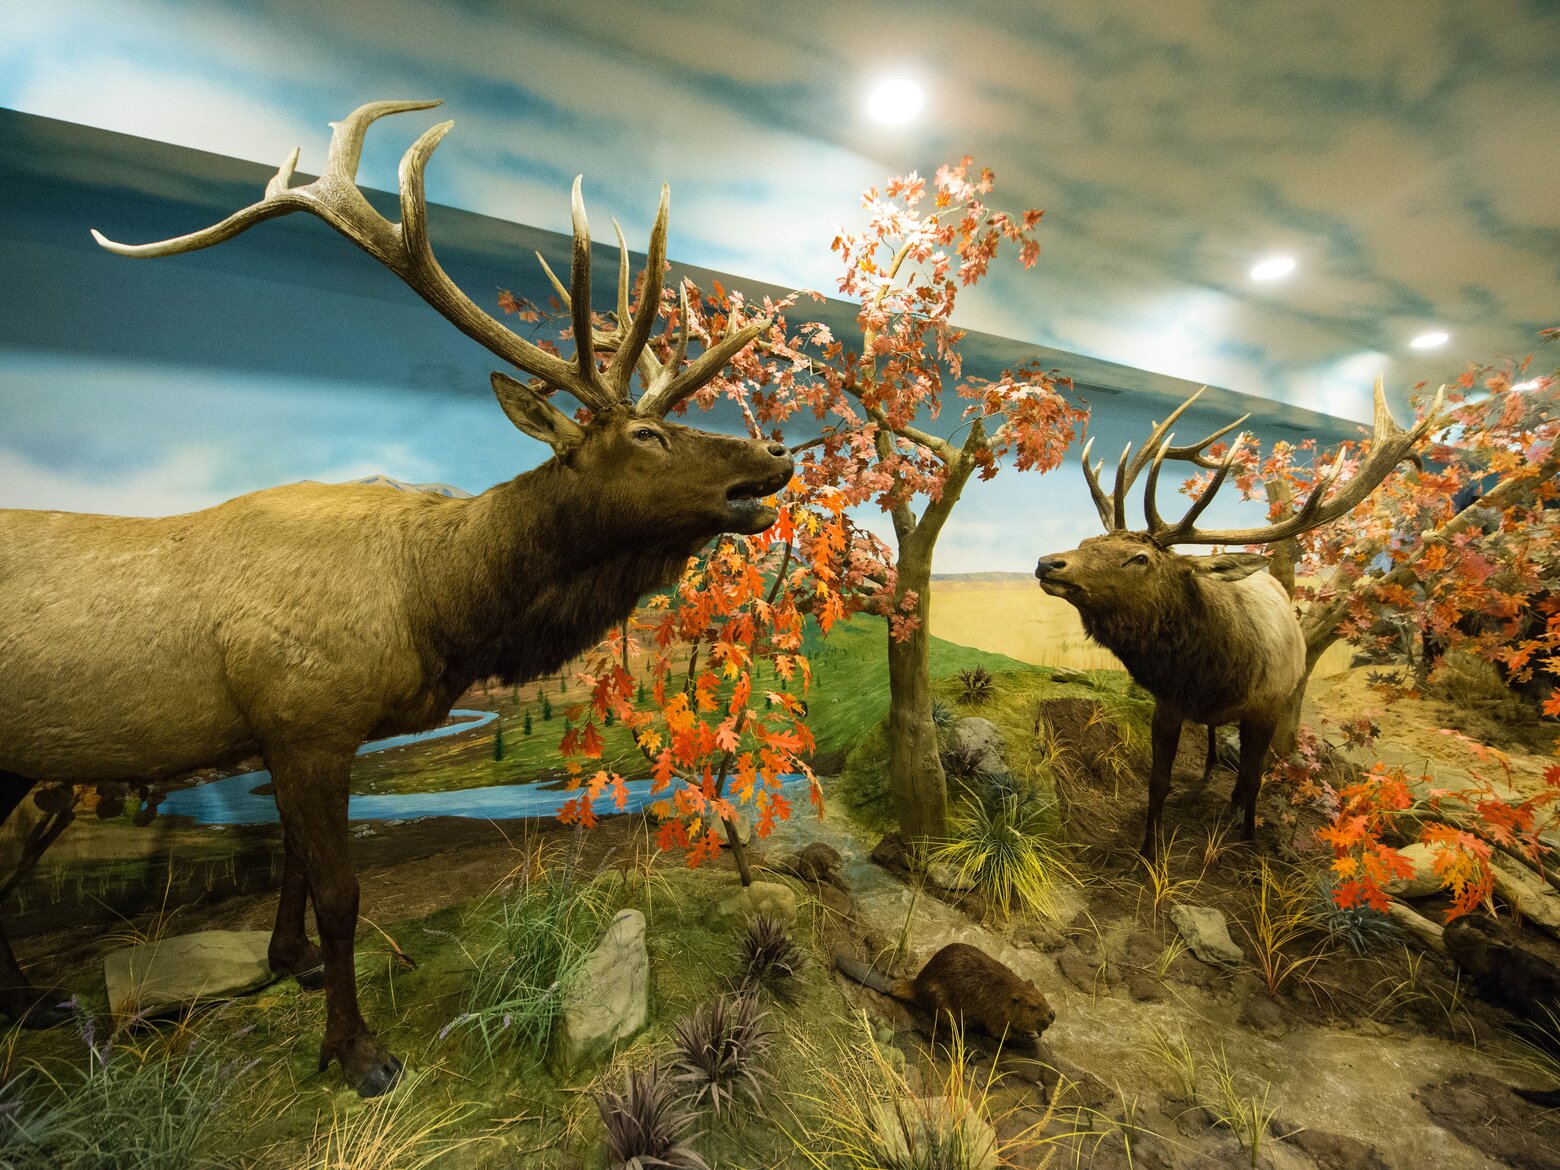 történelmi modellvasút kiállítás és vadászati múzeum